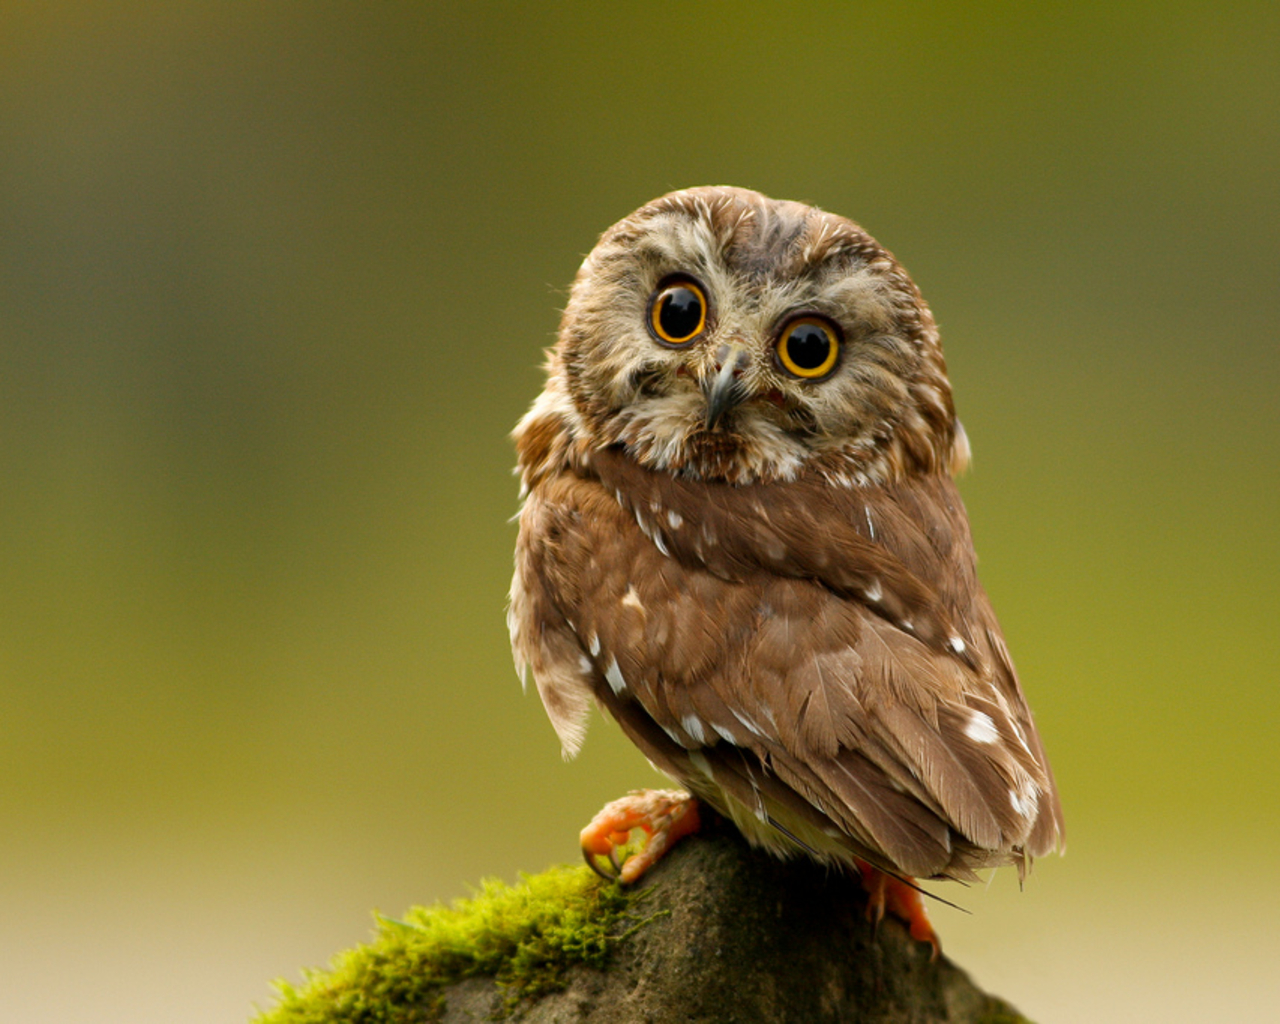 Cute owl wallpaper hd 3 - High Definition Widescreen Backgrounds